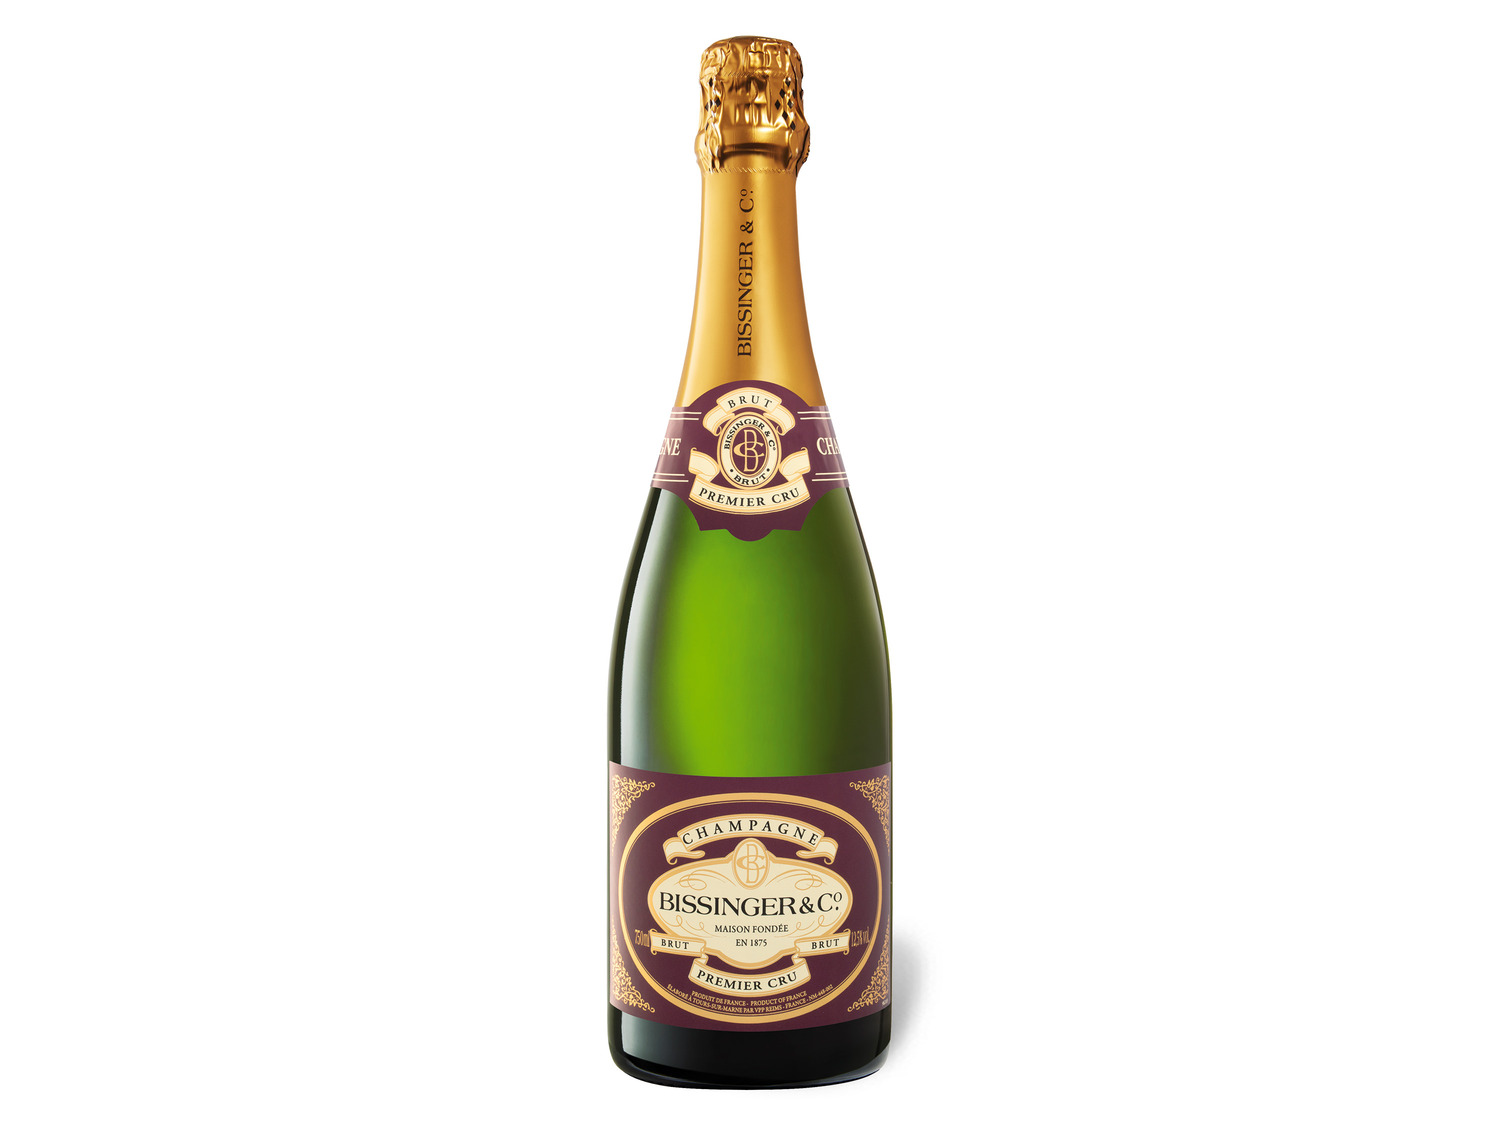 Bissinger Premier Cru brut, Champagner LIDL 